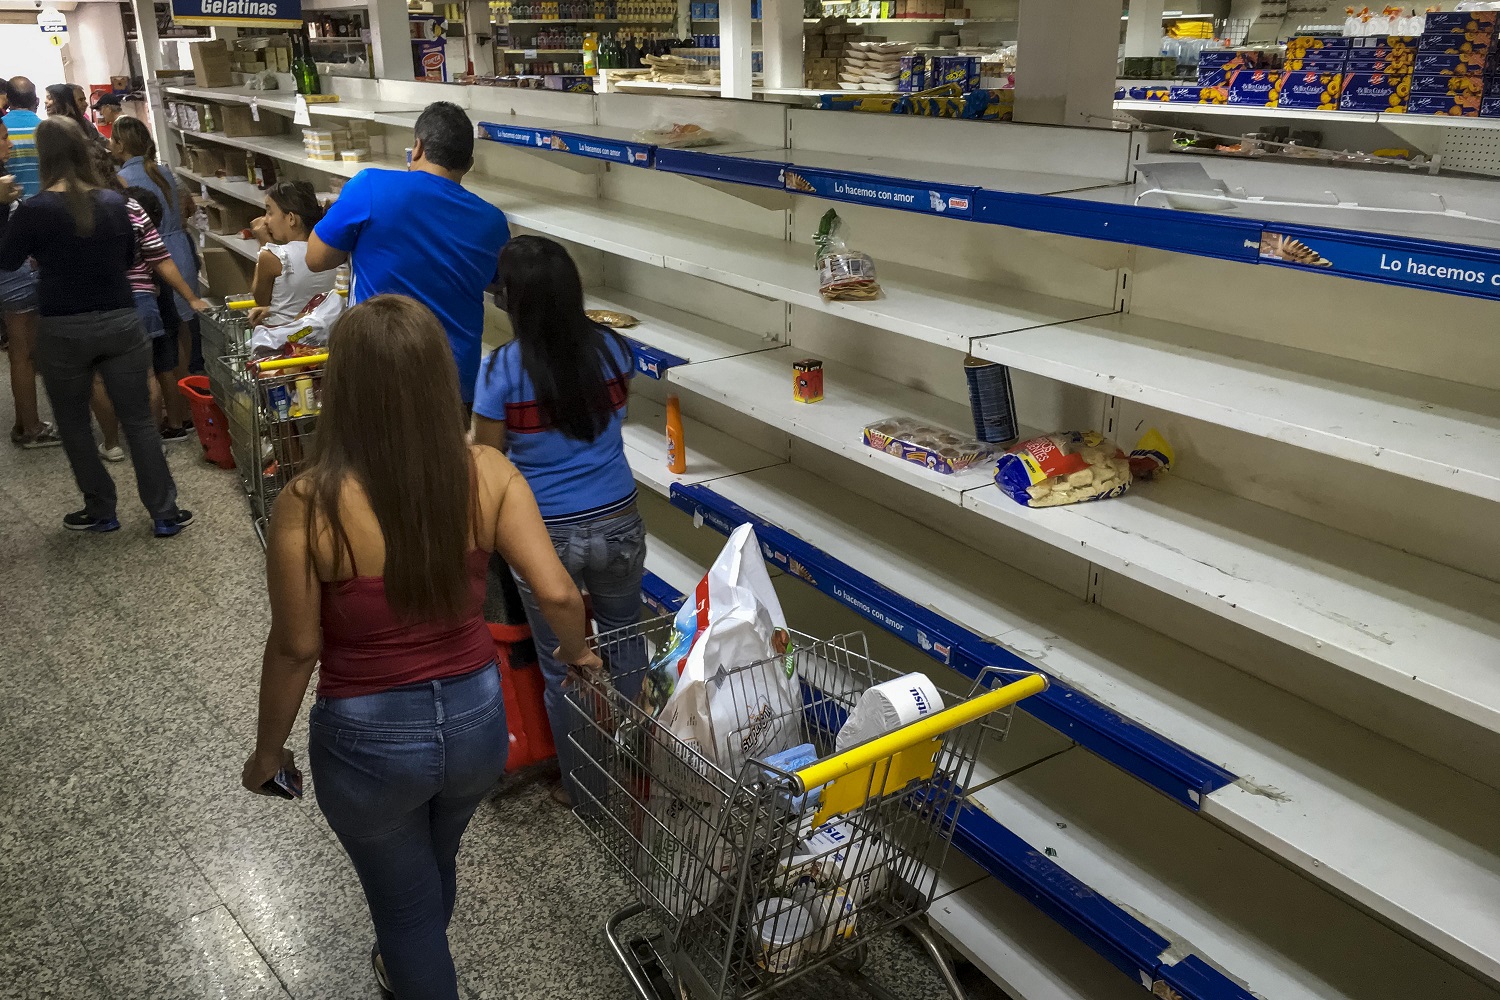 Personas buscan alimentos en un supermercado con estanterías parcialmente vacíos hoy, lunes 24 de julio de 2017, en Caracas (Venezuela). Numerosos supermercados de Caracas cerrarán hoy con más estanterías vacías de lo habitual después de que los habitantes de la capital hicieran acopio de alimentos y otros productos básicos ante el paro general contra el Gobierno que la oposición convocó para el miércoles y el jueves. EFE/MIGUEL GUTIÉRREZ